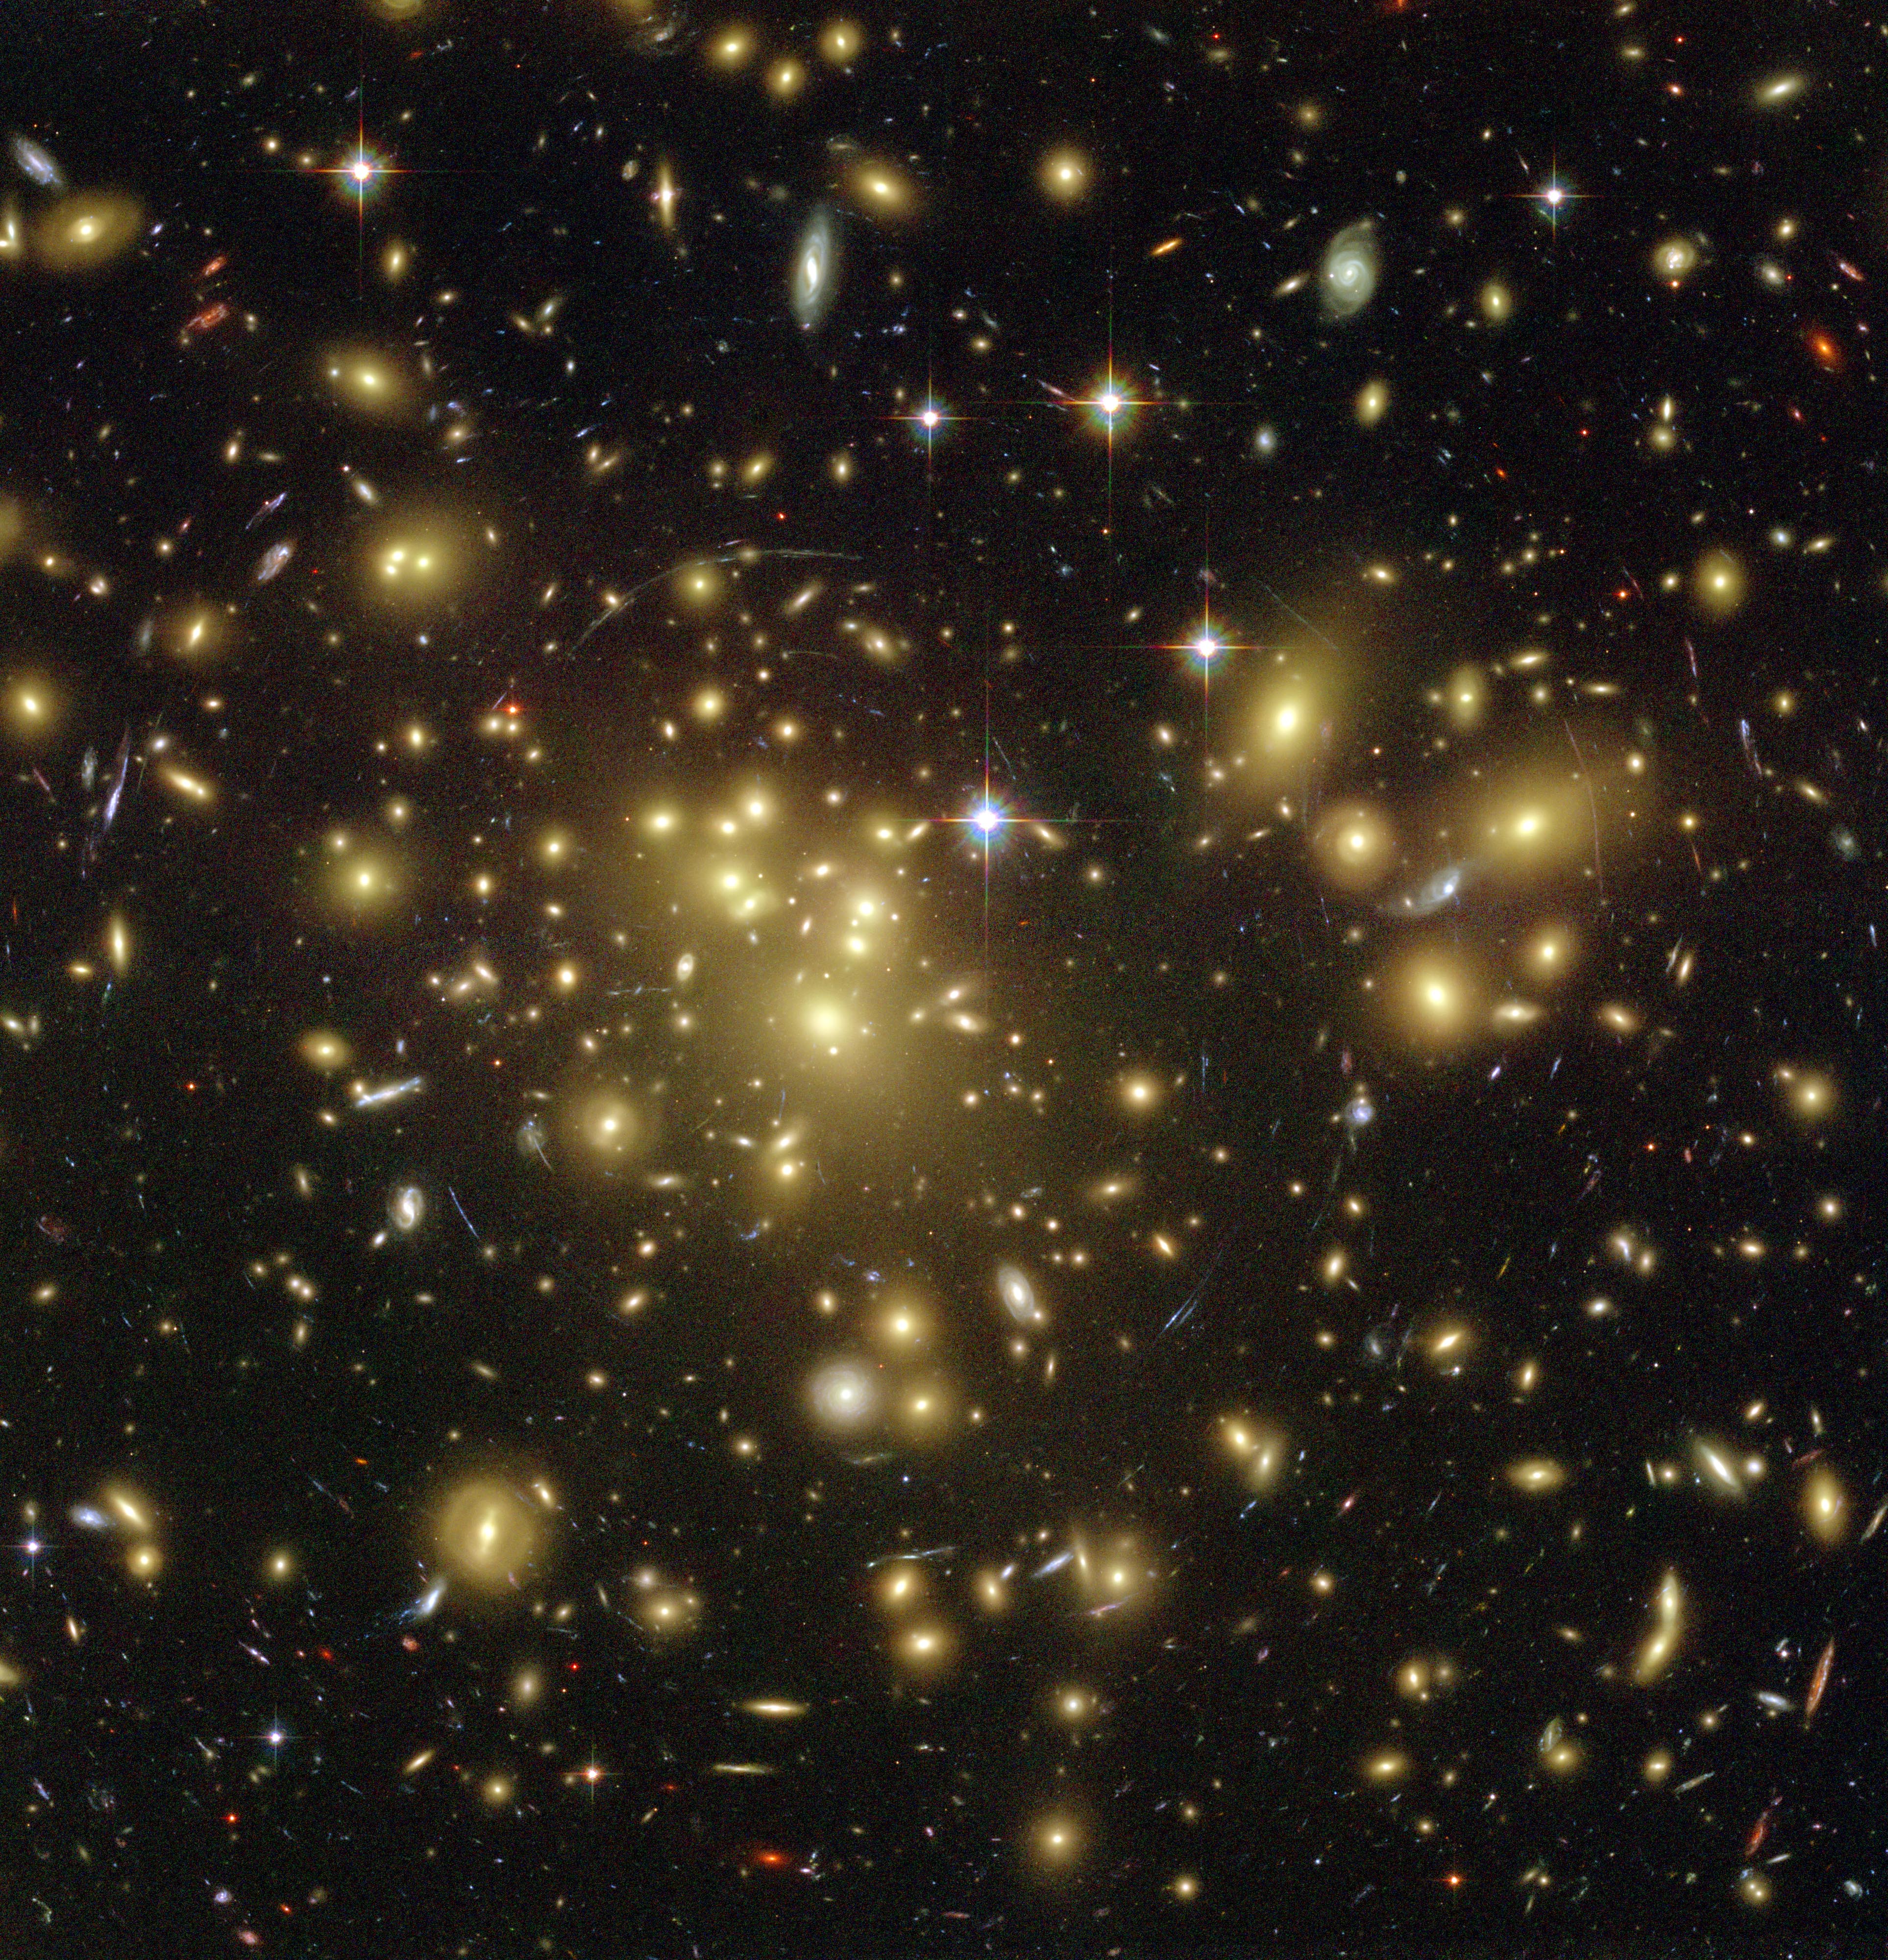 Certains des arcs lumineux les plus faibles de cette image sont en fait des galaxies situées à un peu plus de 13 milliards d'années-lumière, déformées par l'effet de lentille gravitationnelle, aussi appelé mirage gravitationnel. © Nasa